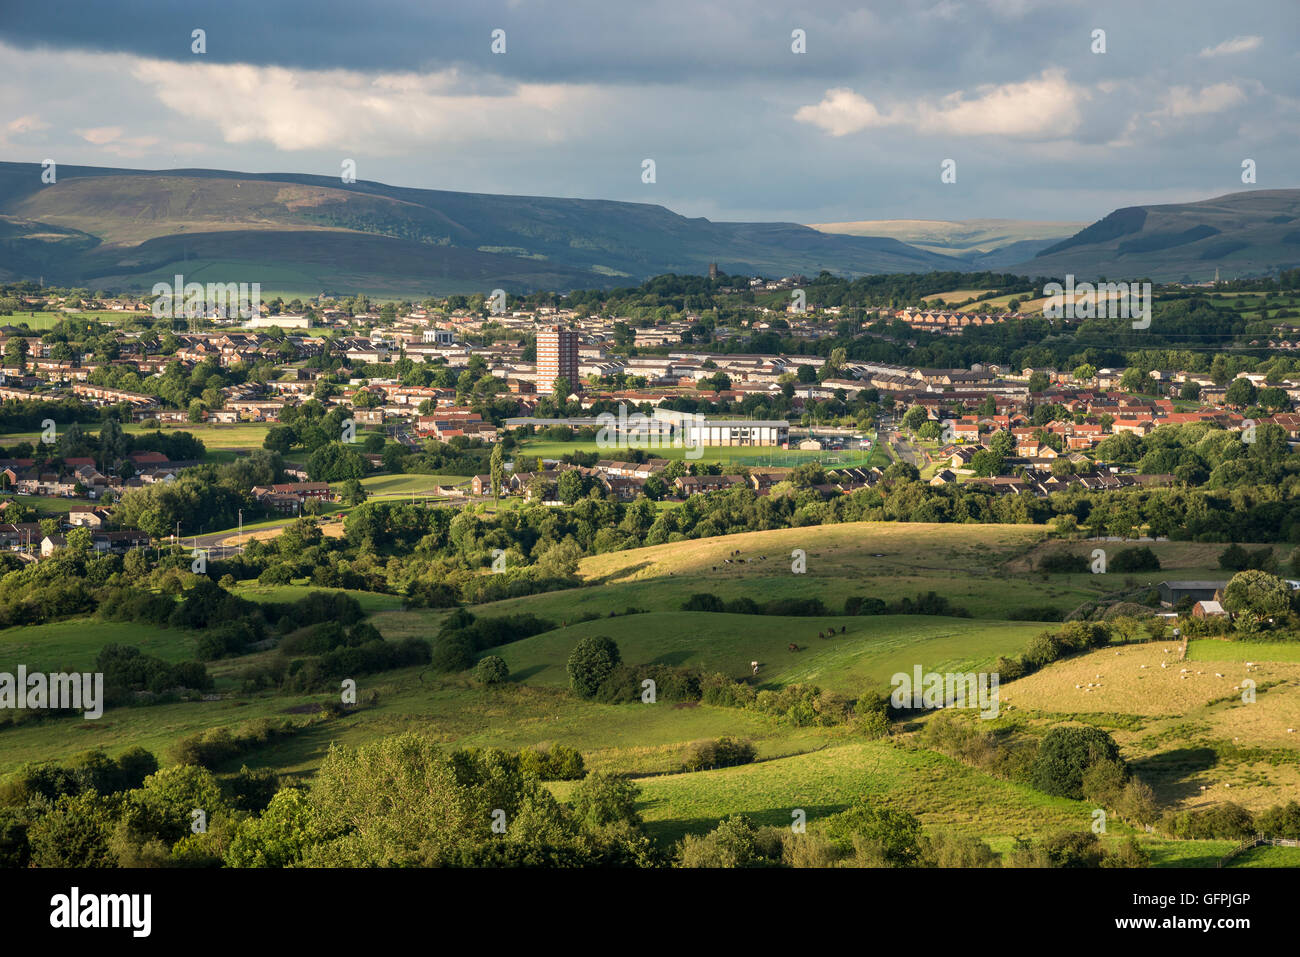 Vista de Hattersley y Mottram en el noroeste de Inglaterra, con las colinas distantes en una tarde de verano. Foto de stock